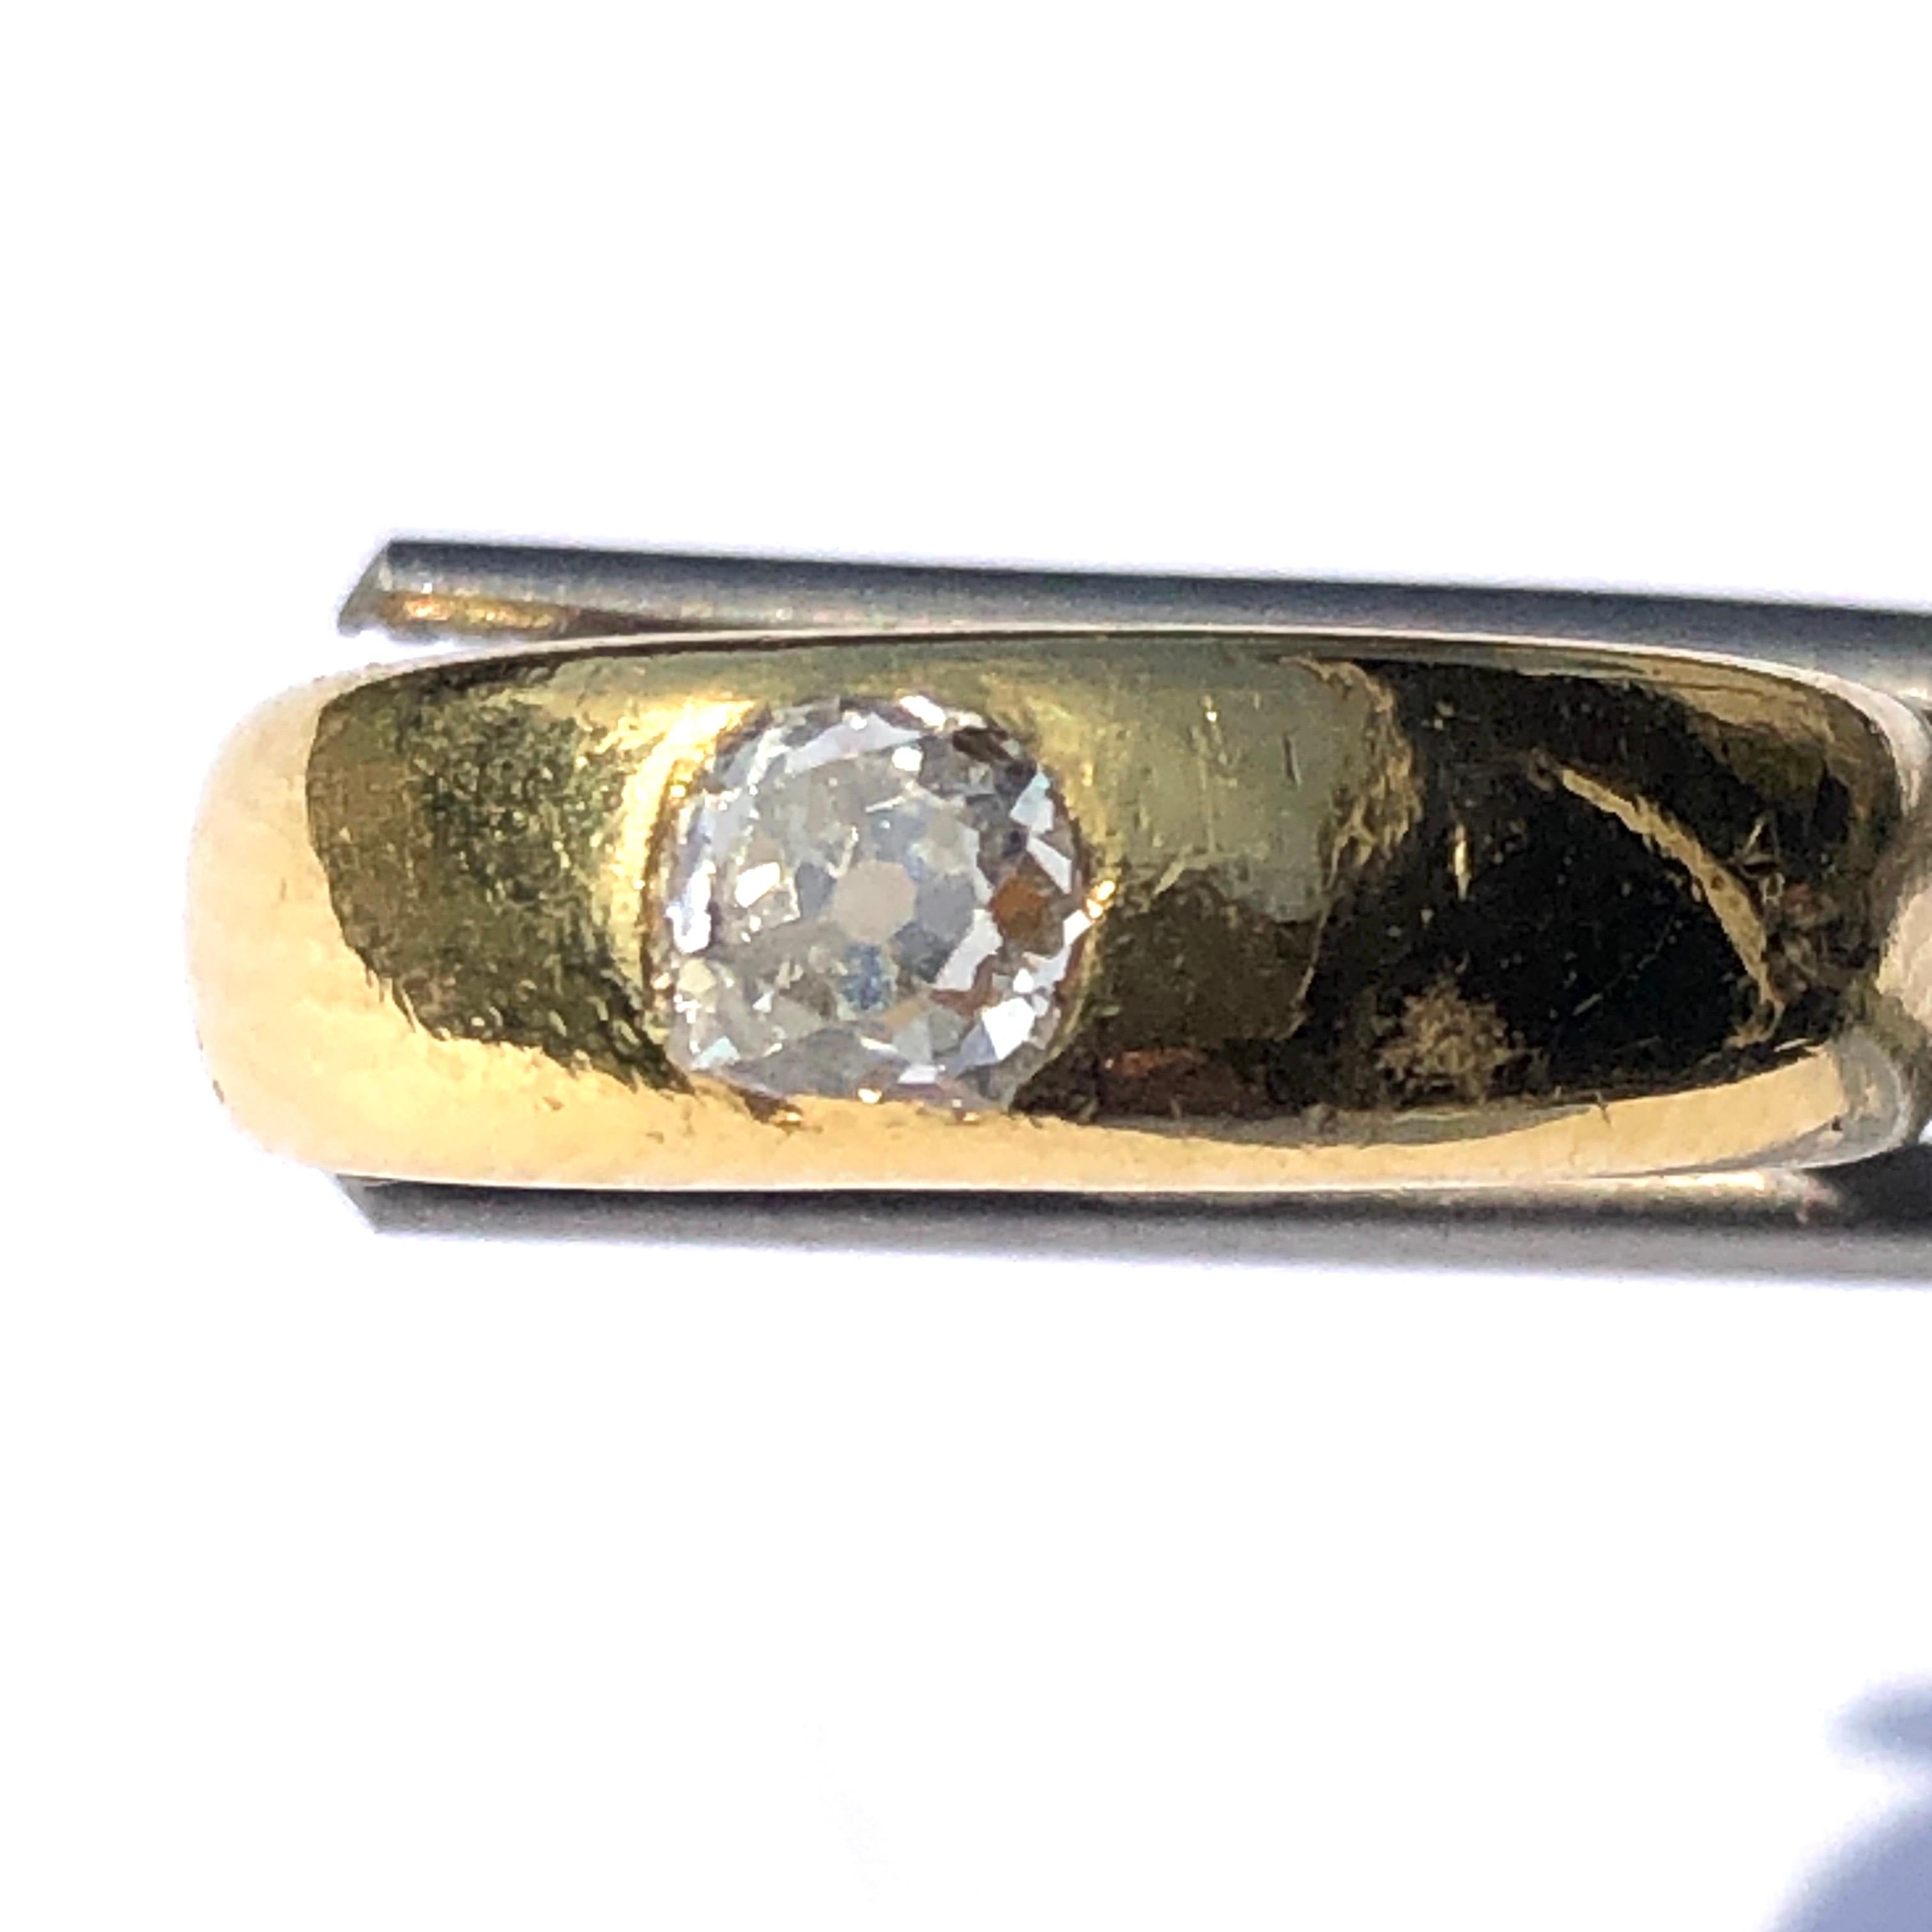 Le diamant de taille ancienne qui se trouve dans ce magnifique bracelet en or brillant est de taille ancienne, de couleur H/I et mesure 45pts. Le style simple de ce bracelet est très facile à porter et le diamant ajoute un peu d'éclat et de glamour